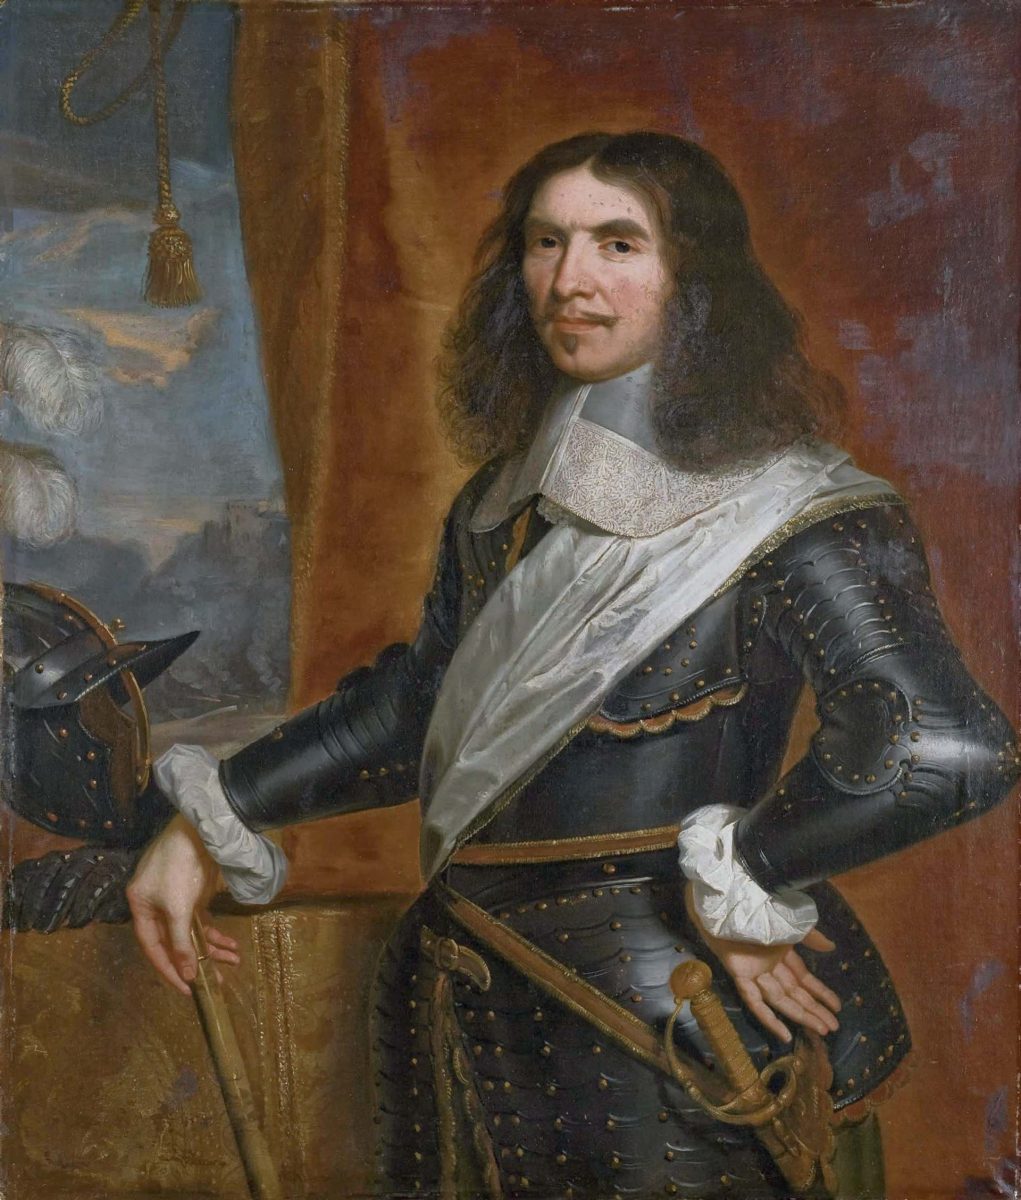 Henri de la Tour d'Auvergne, vizconde de Turenne